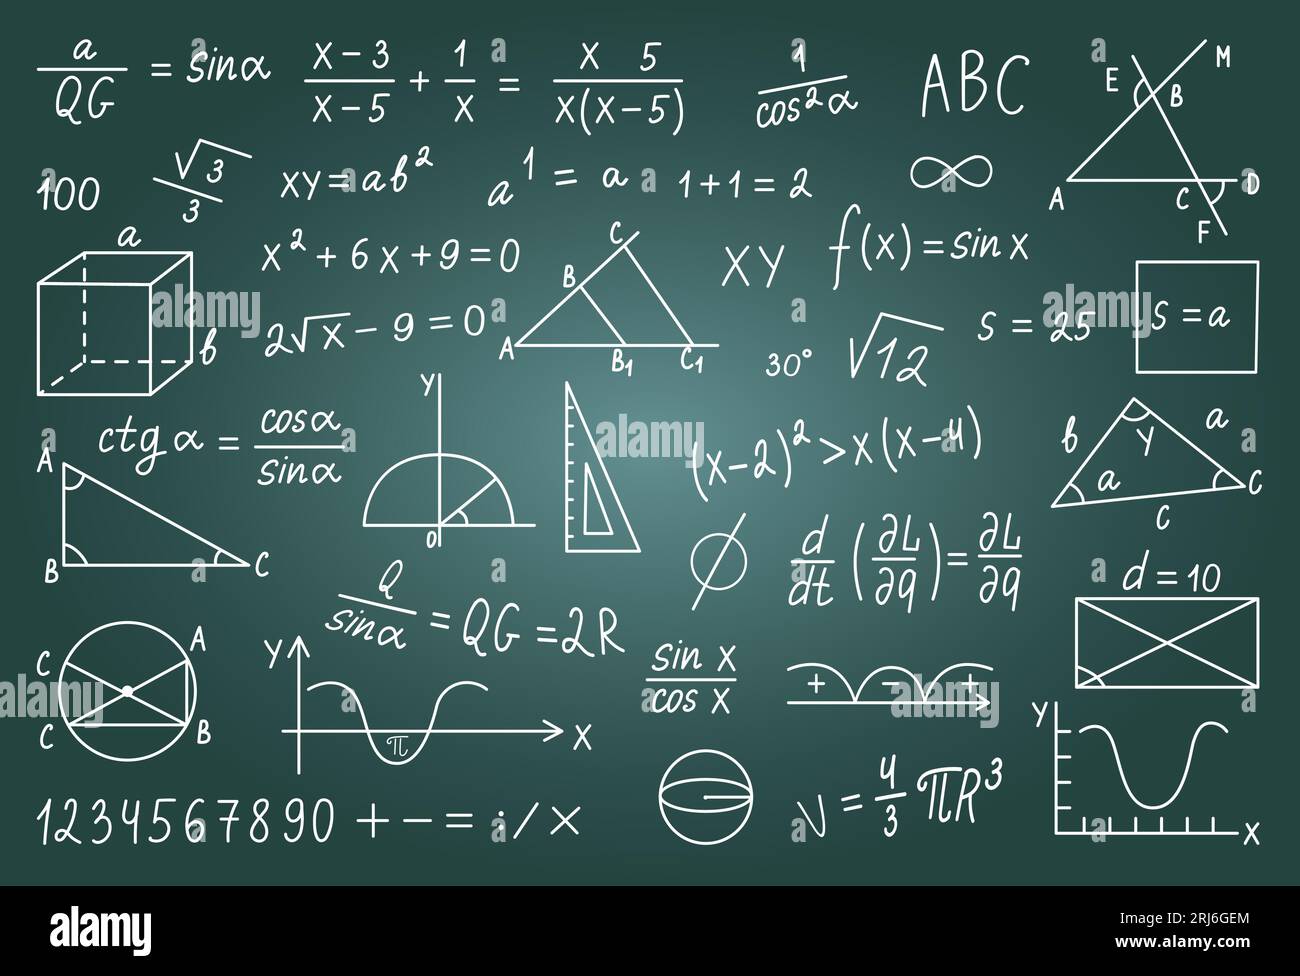 Cartelli matematici disegnati a mano sulla lavagna a gesso. Grafica e formula, doodle matematico, geometrico o fisico sulla lavagna, simboli vettoriali neoterici Illustrazione Vettoriale